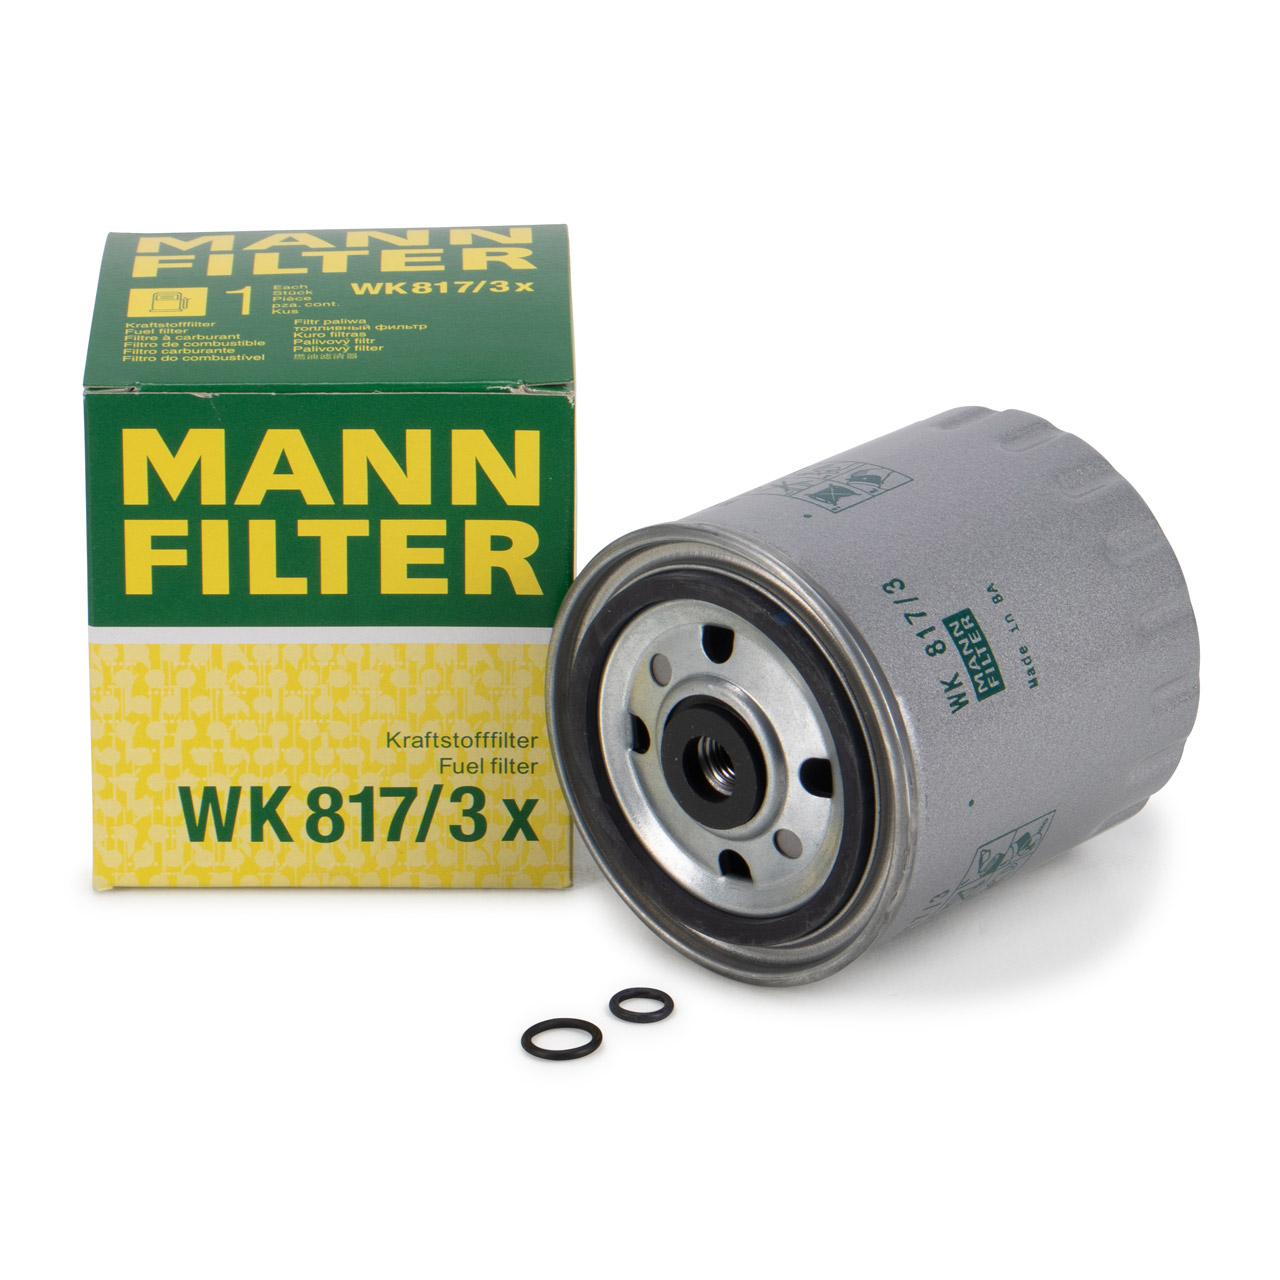 MANN WK817/3X Kraftstofffilter MERCEDES W201 W202 W124 W210 W140 W638 Sprinter OM601-606